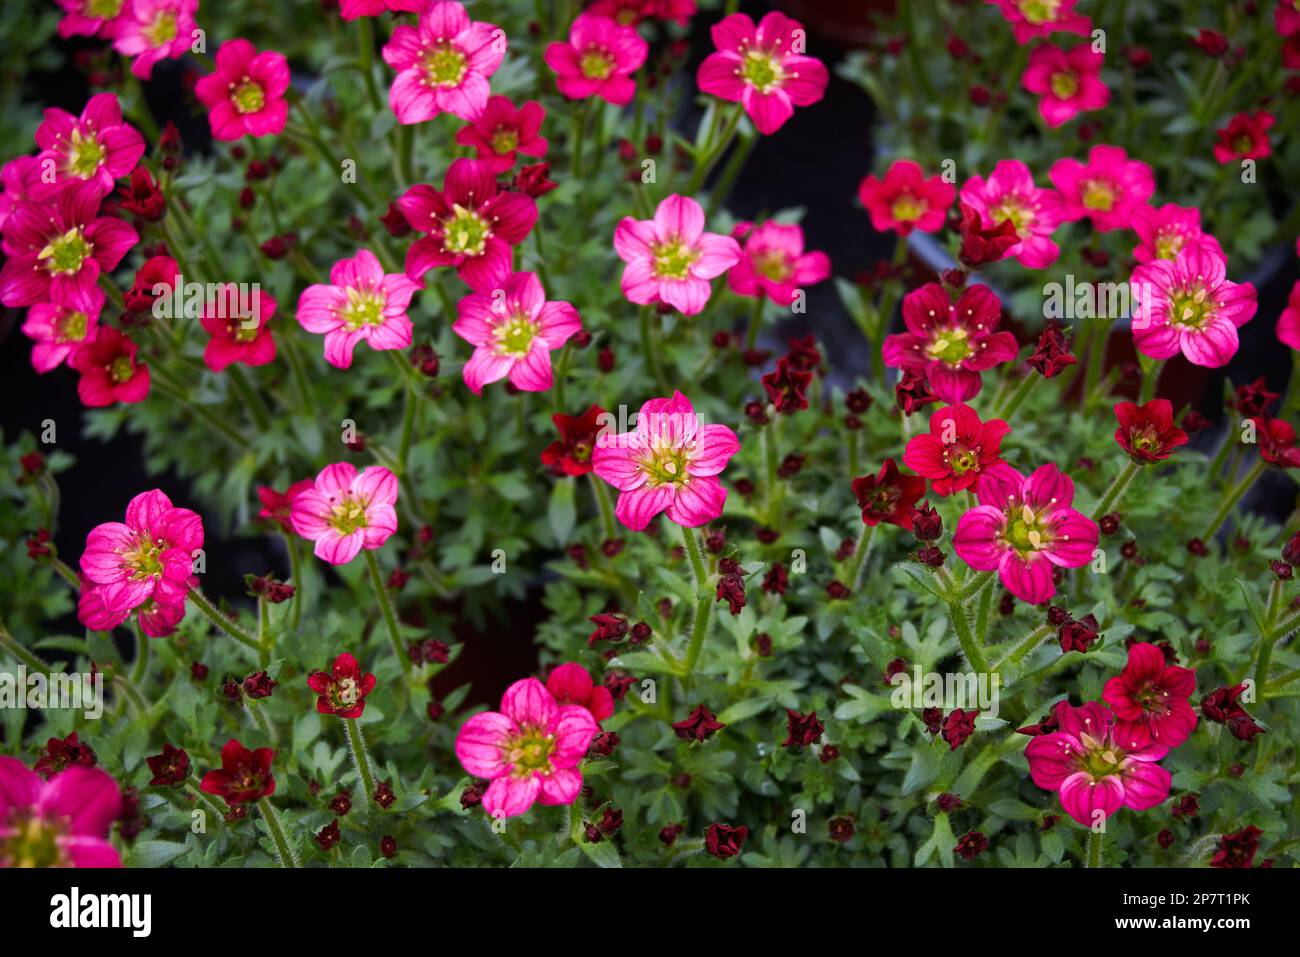 Saxifraga small pink flowers, Saxifraga arendsii. Saxifragaceae family perennial flowering plant Stock Photo